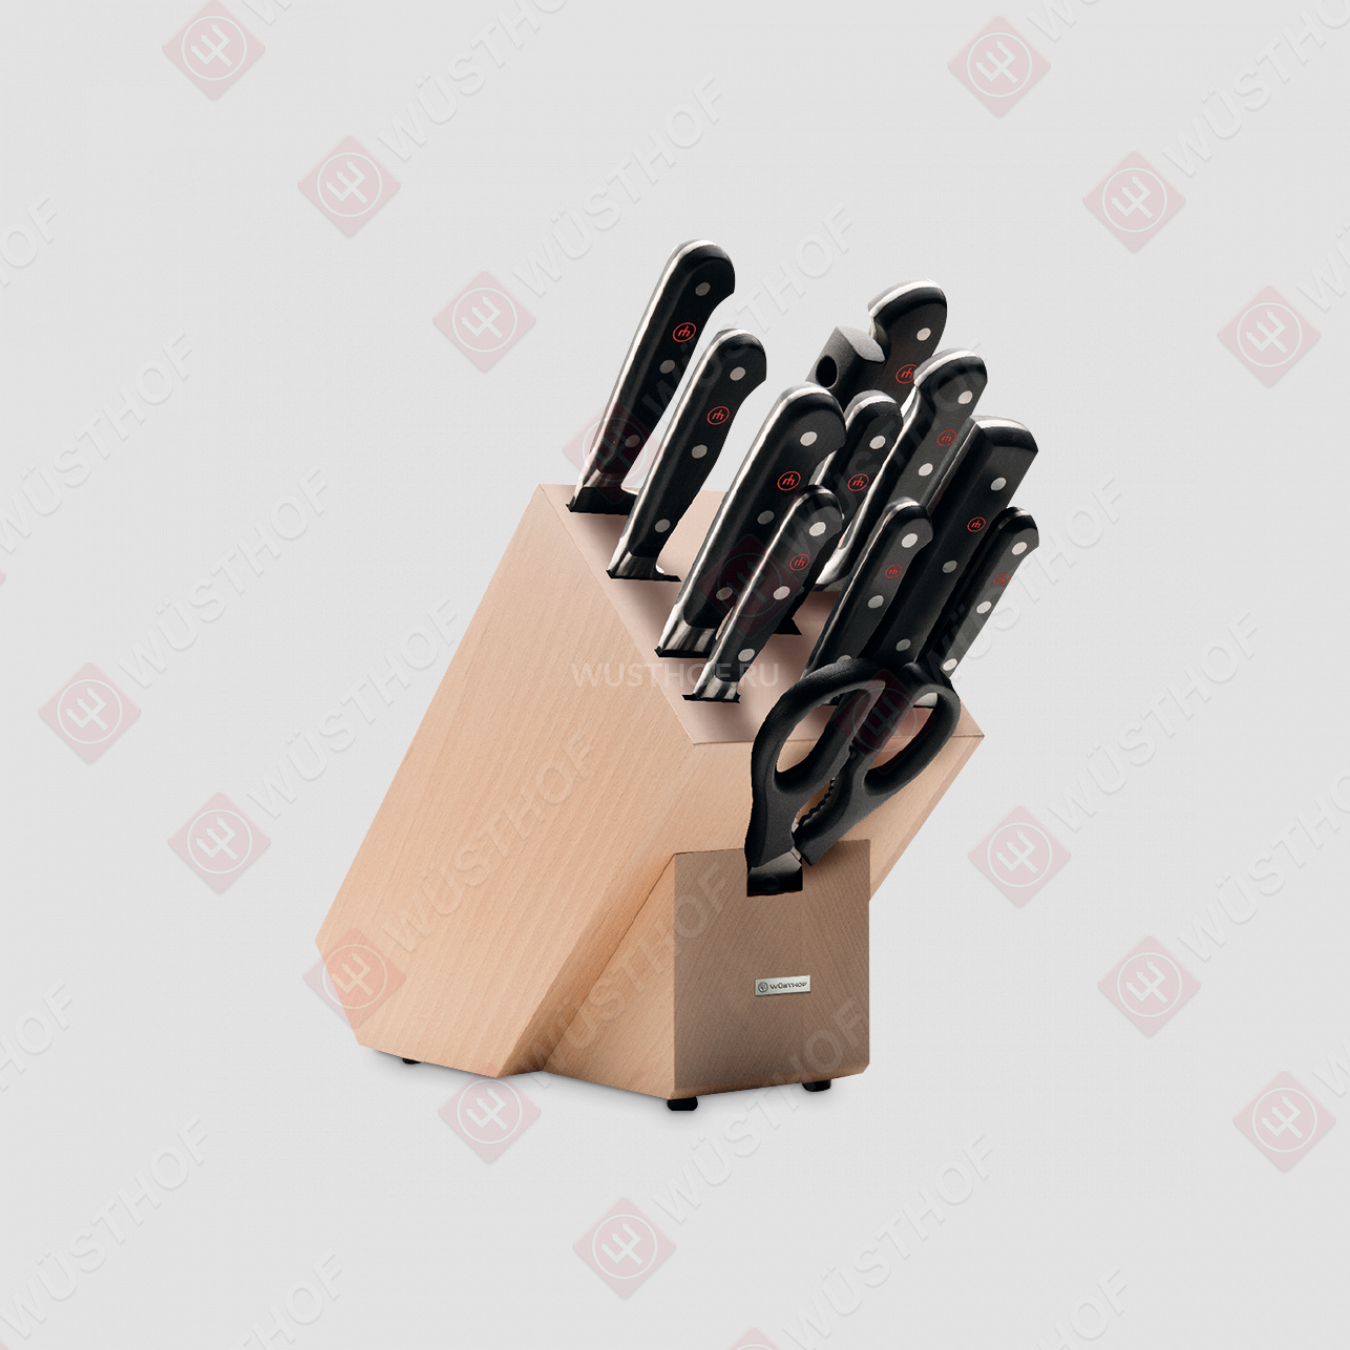 Набор кухонных ножей 9 штук + кухонные ножницы + вилка + мусат в деревянной подставке, серия Classic, WUESTHOF, Золинген, Германия